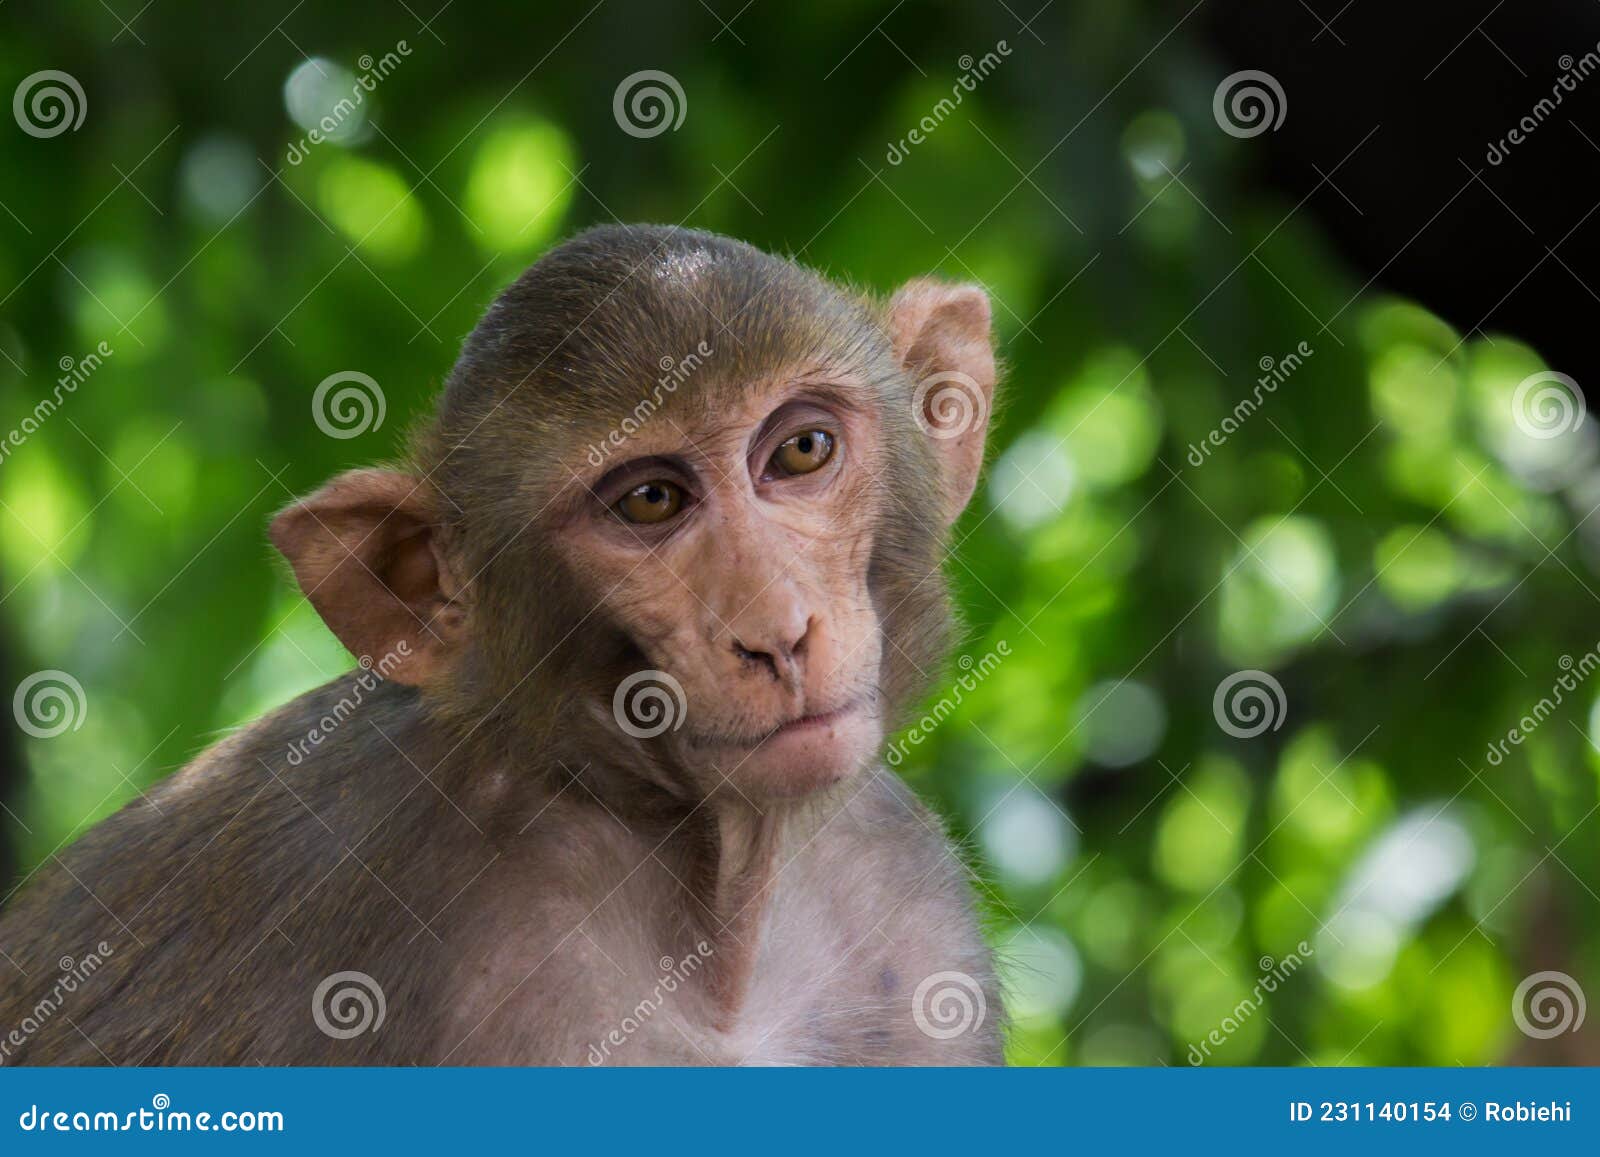 Macacos engraçados foto de stock. Imagem de quente, real - 69068284